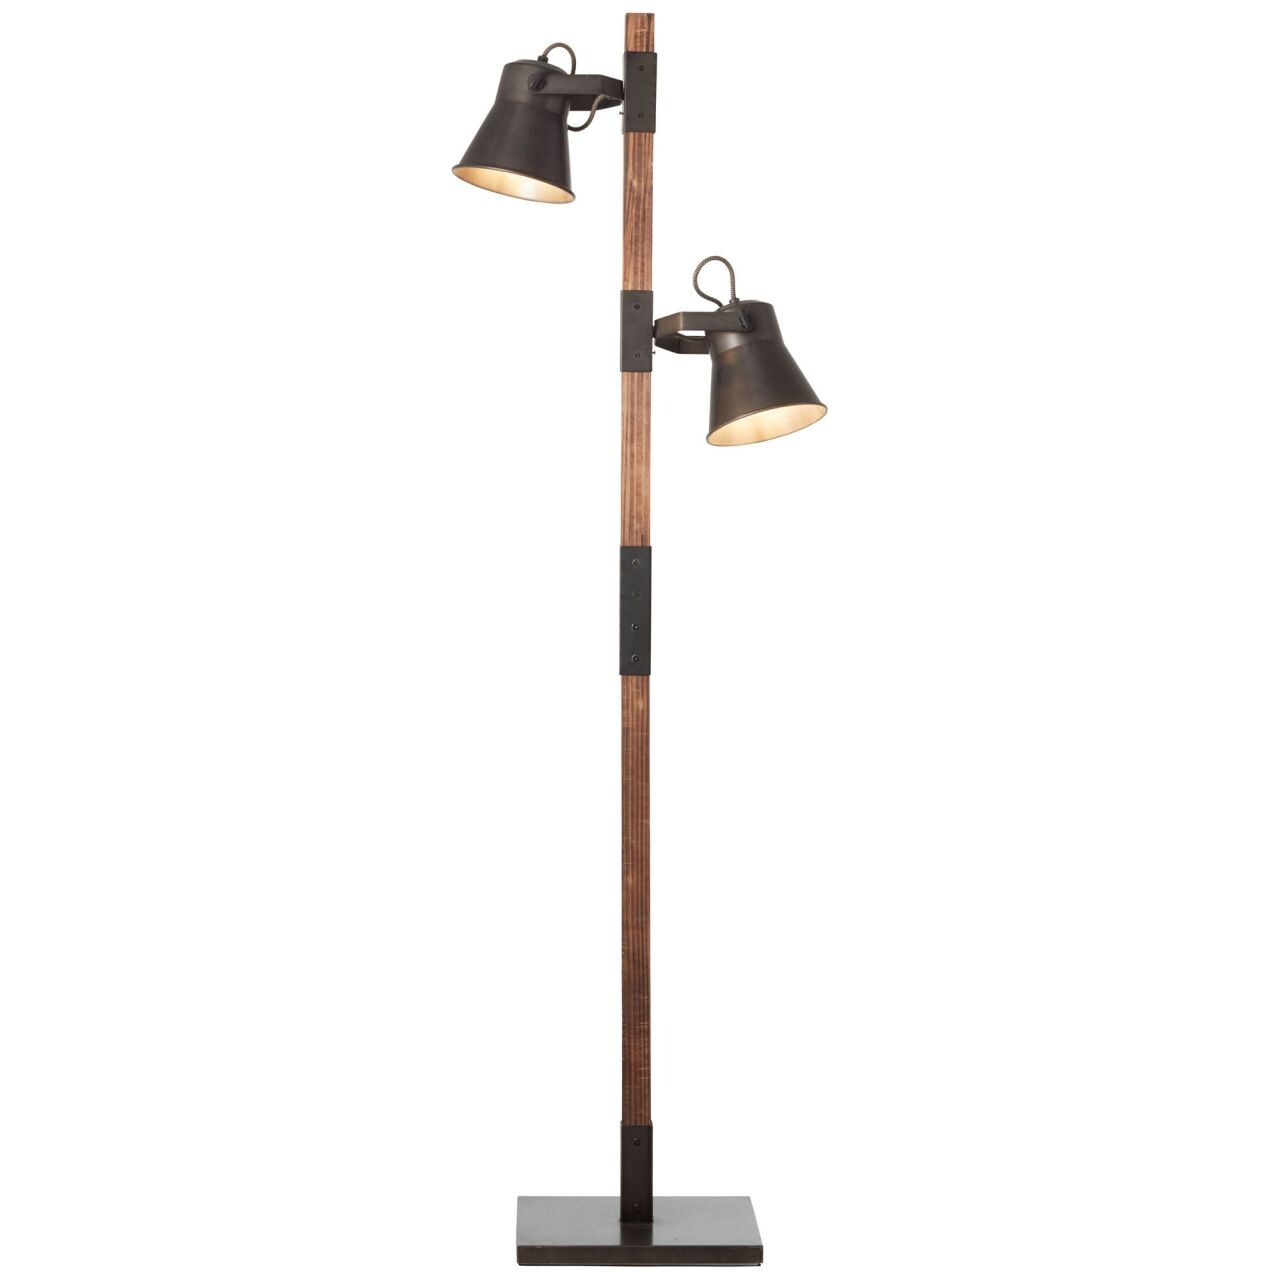 BRILLIANT Lampe Plow Standleuchte 2flg schwarz stahl/holz   2x A60, E27, 10W, geeignet für Normallampen (nicht enthalten